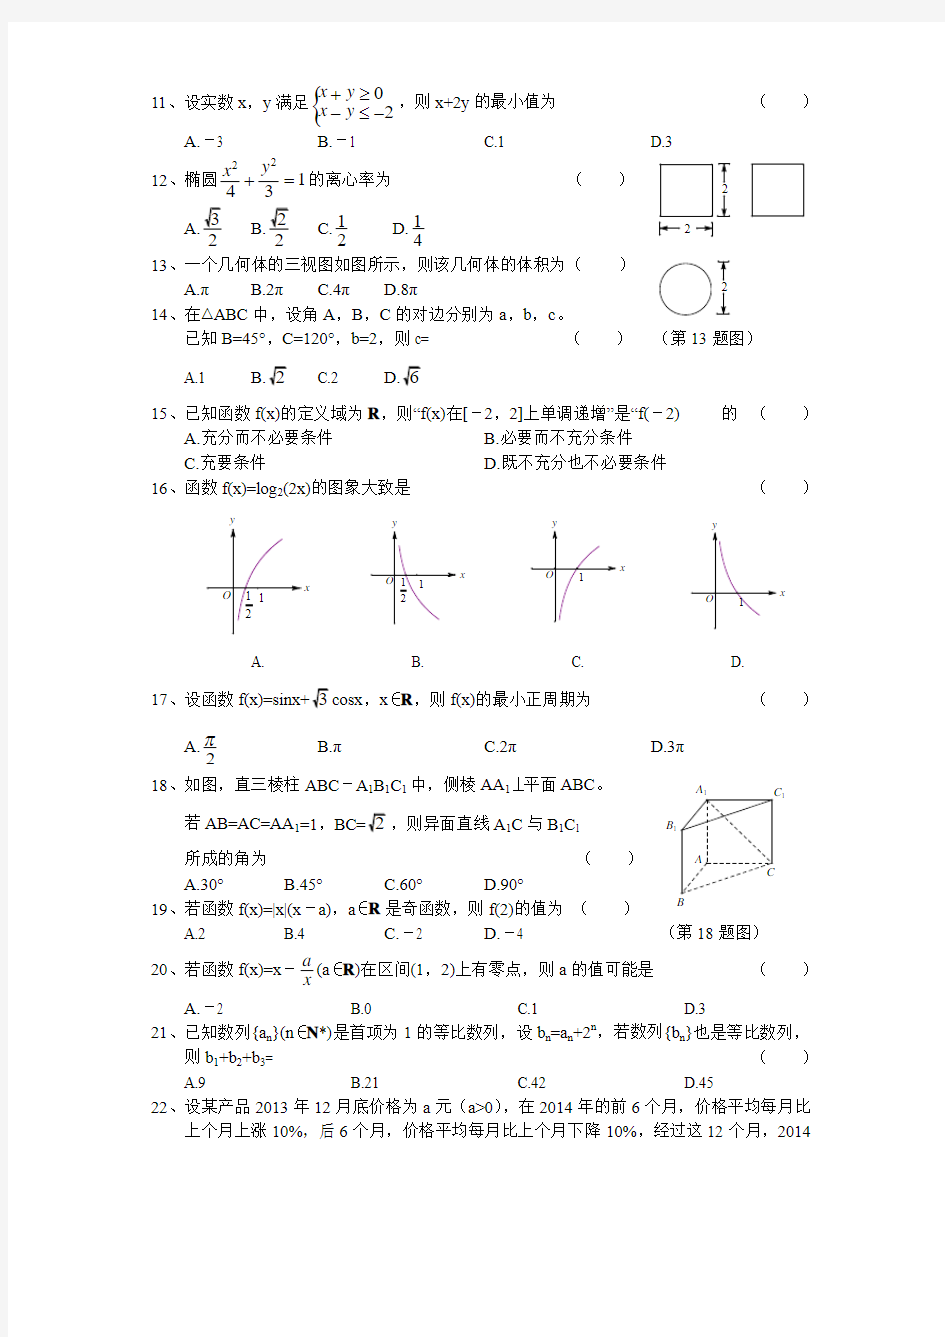 2015年1月浙江省高中会考及学业水平考试数学试题真题及答案